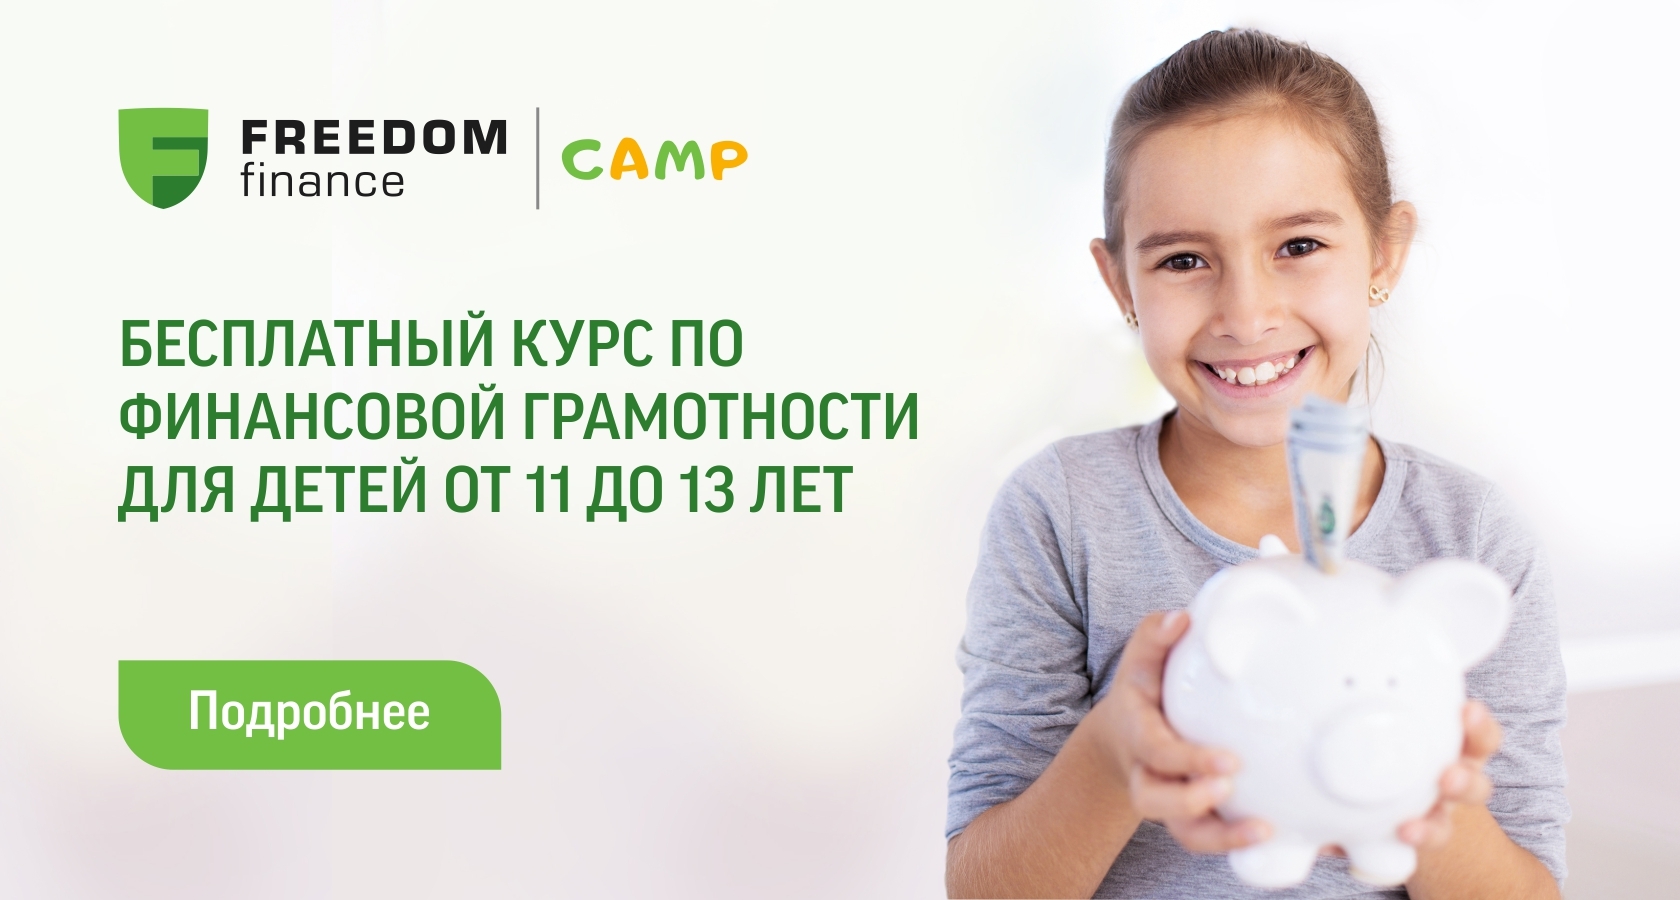 КСЖ "Freedom Finance Life" запускает бесплатный лагерь по финансовой грамотности для детей